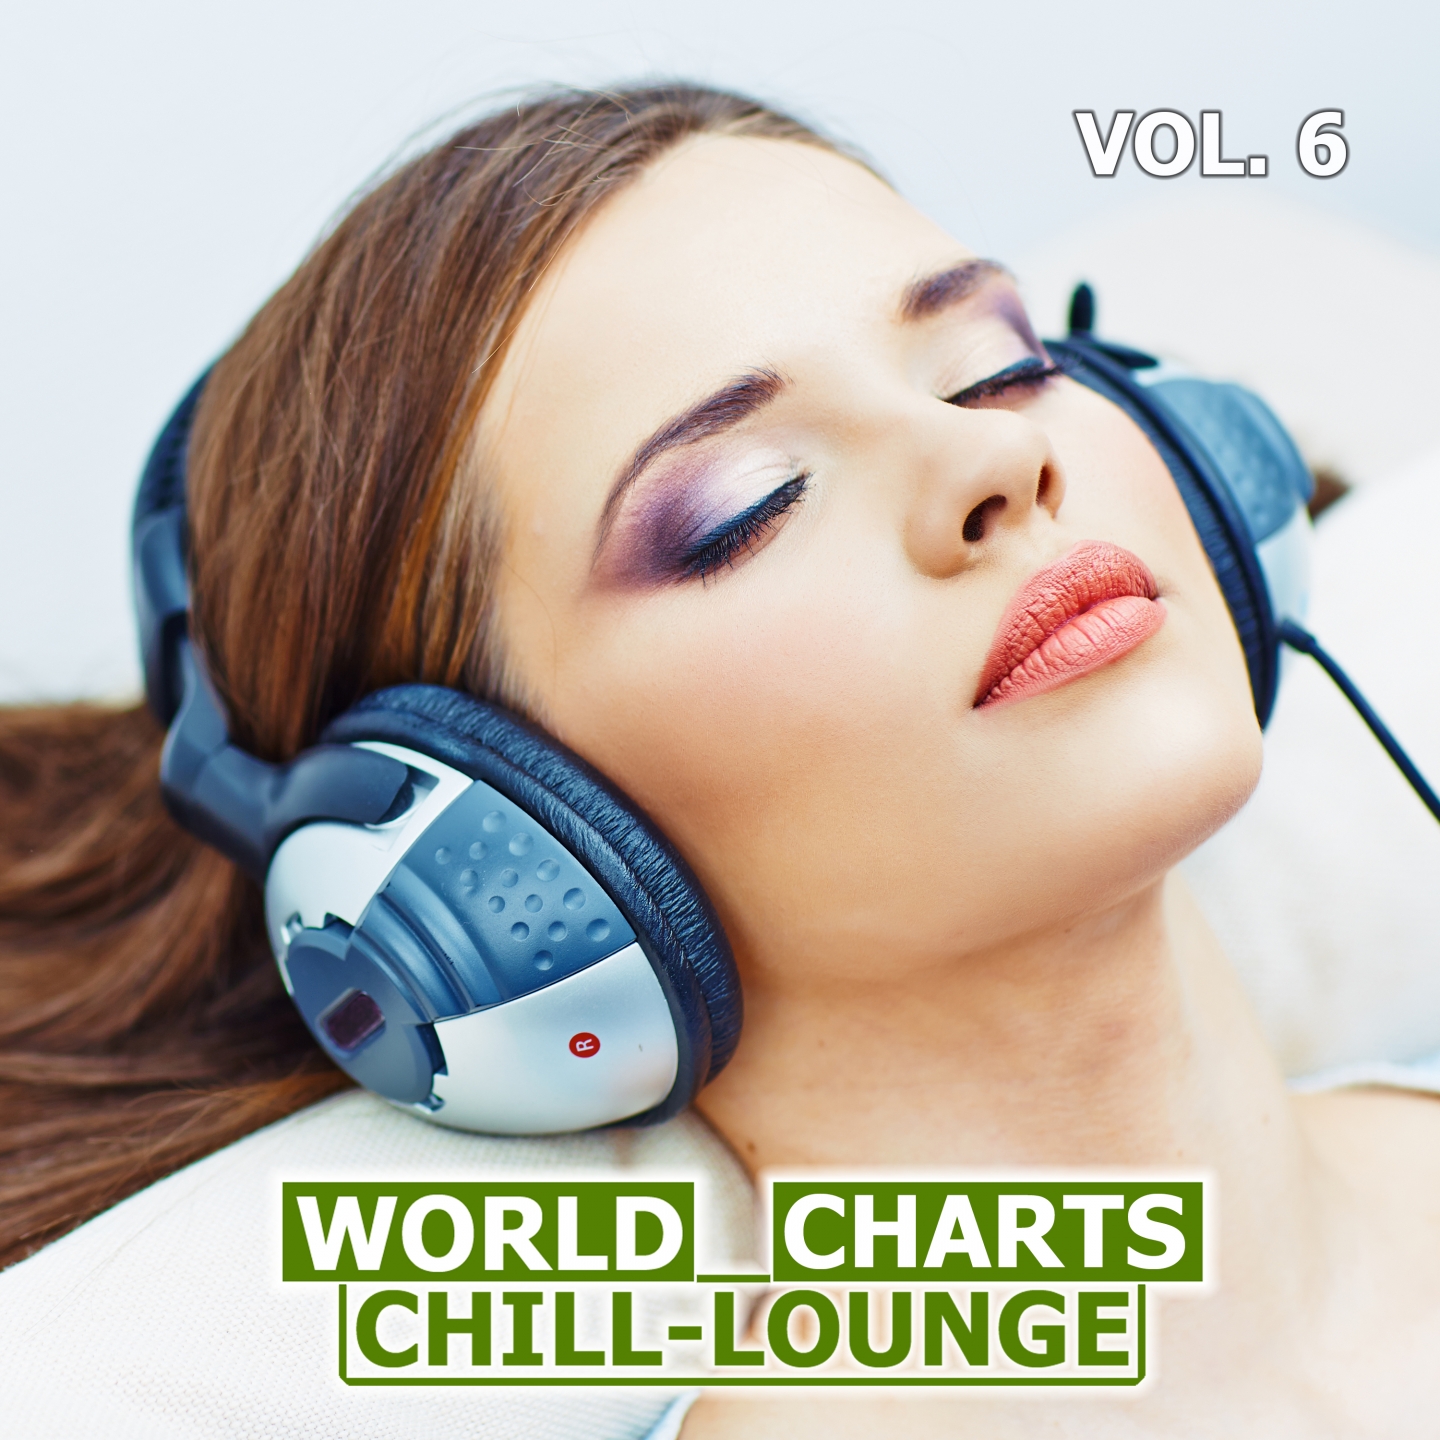 World Chill-Lounge Charts, Vol. 6